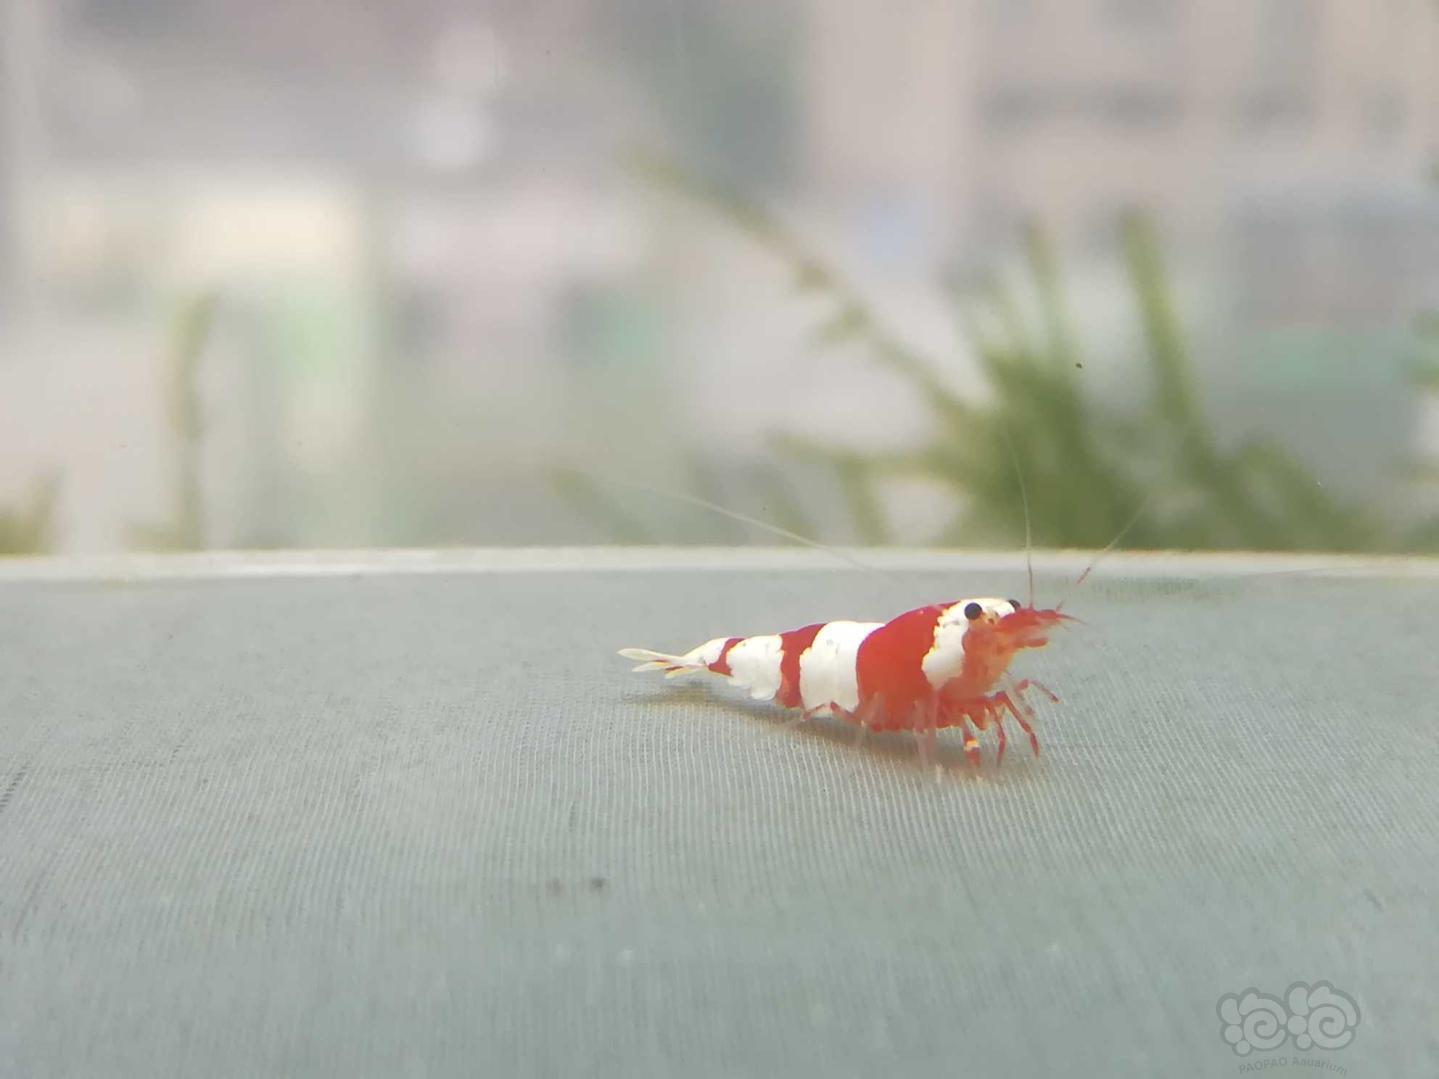 【虾】2020-09-09#RMB拍卖#红白纯血水晶虾一份2只-图1